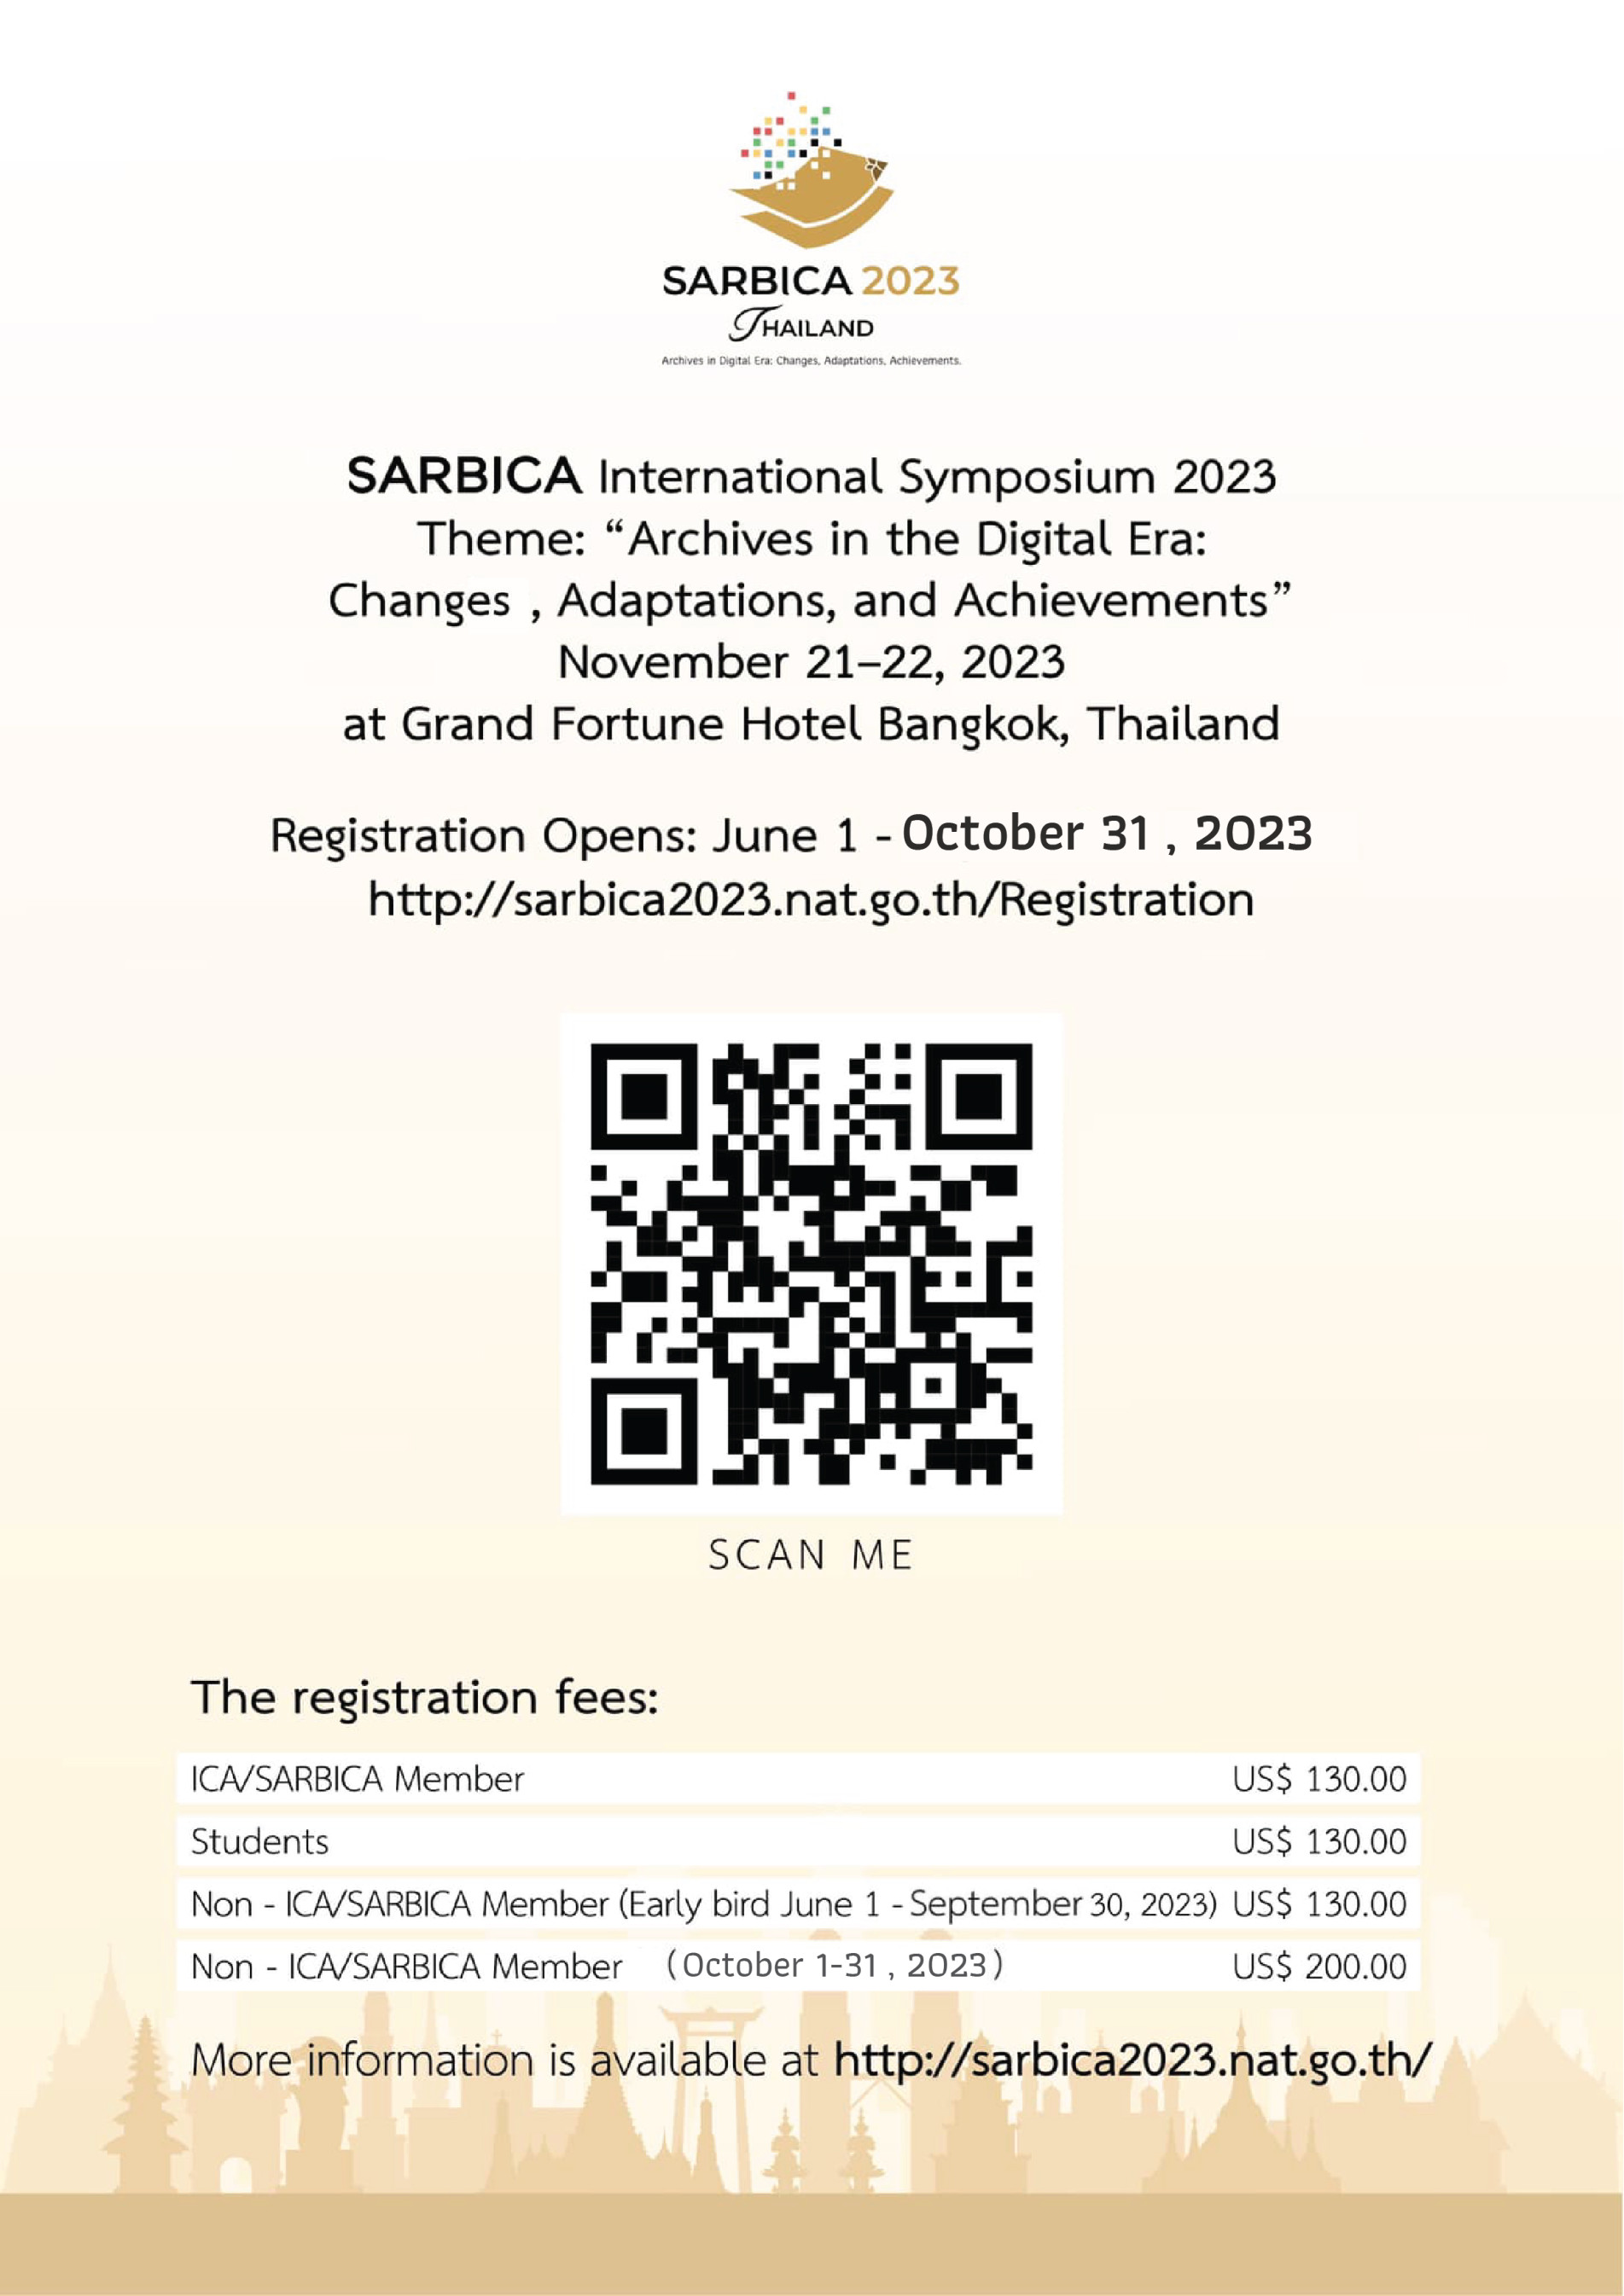 ข่าวดี!! ขยายเวลาลงทะเบียนเข้าร่วมการสัมมนา SARBICA International Symposium 2023